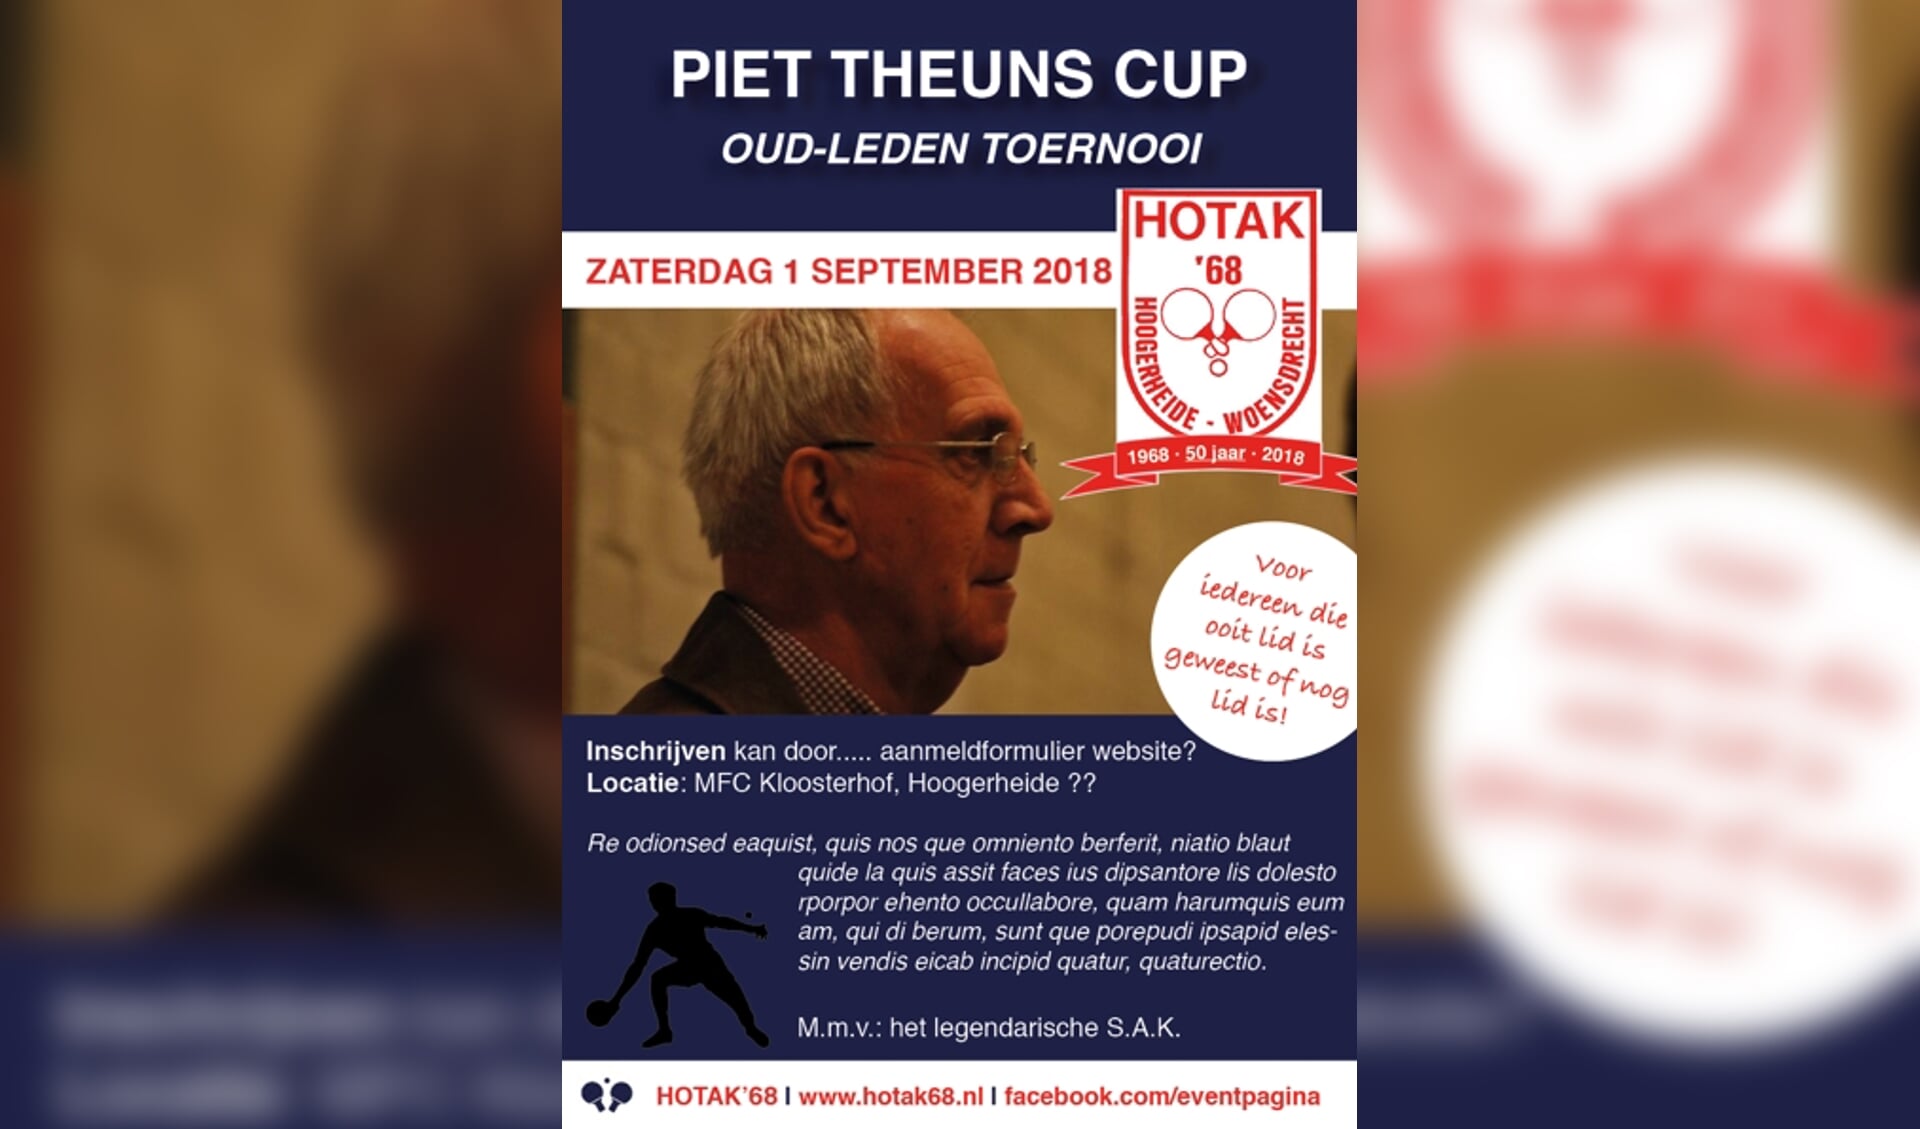 Piet Theuns Cup Hotak 68